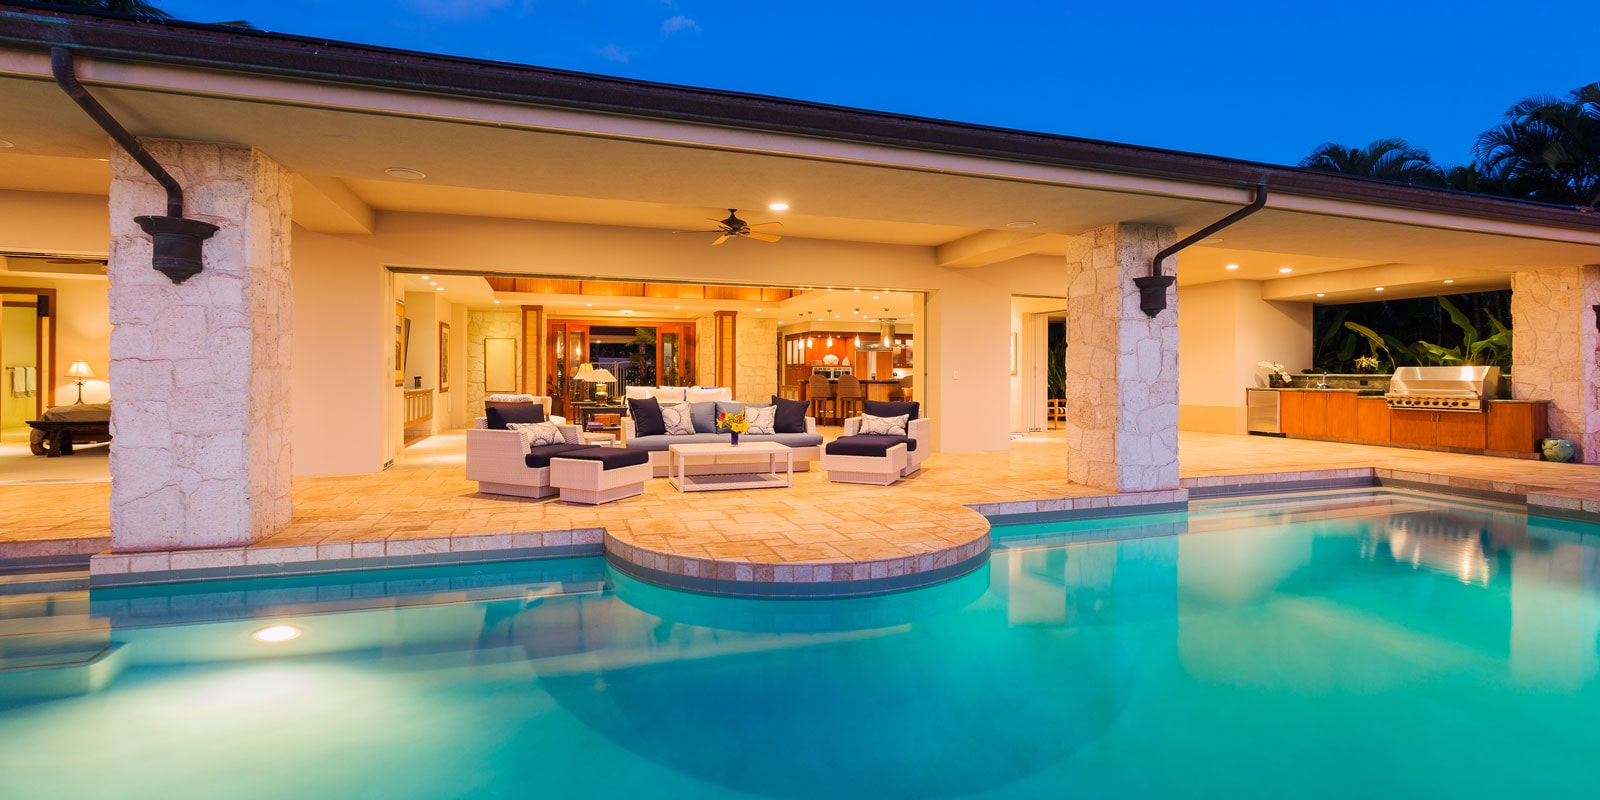 Luxury home backyard with pool